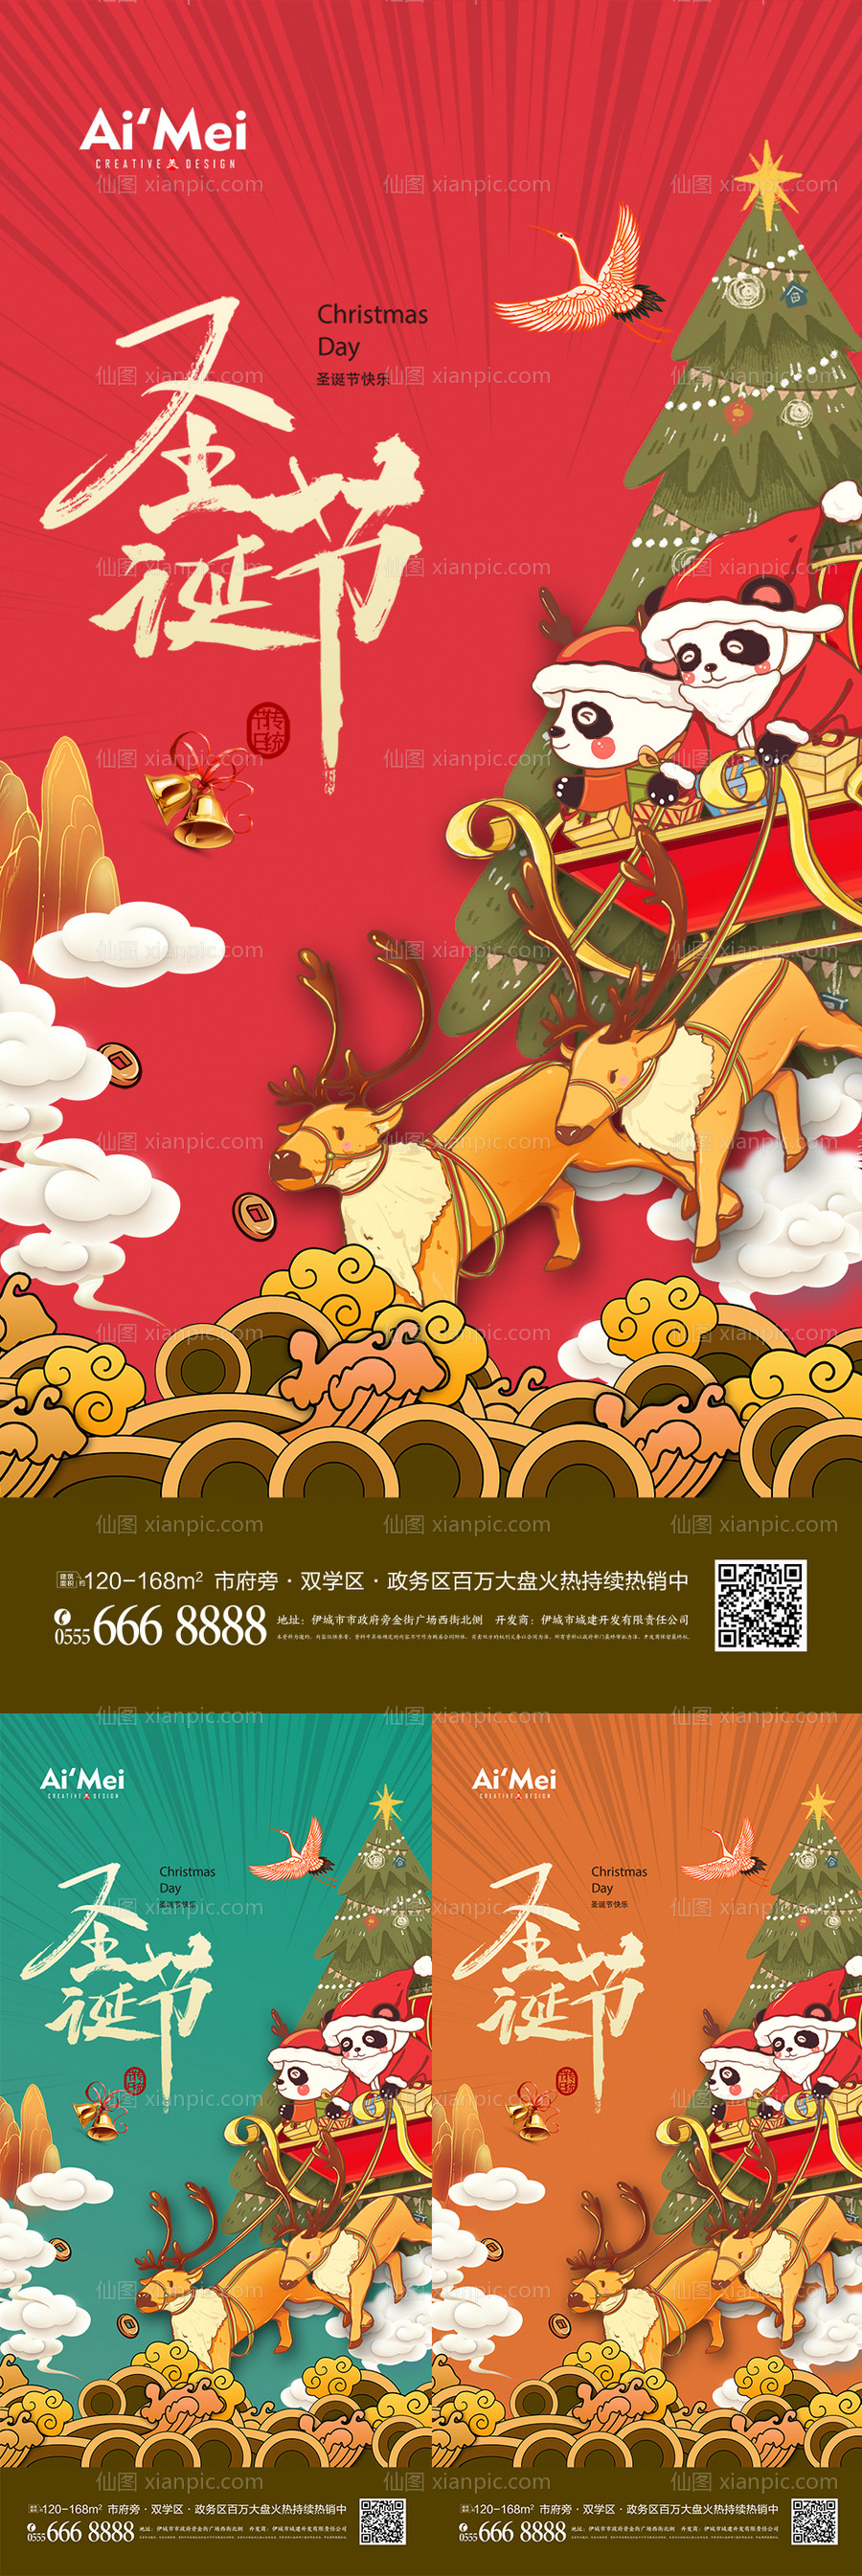 素材乐-中国风熊猫国潮圣诞节海报